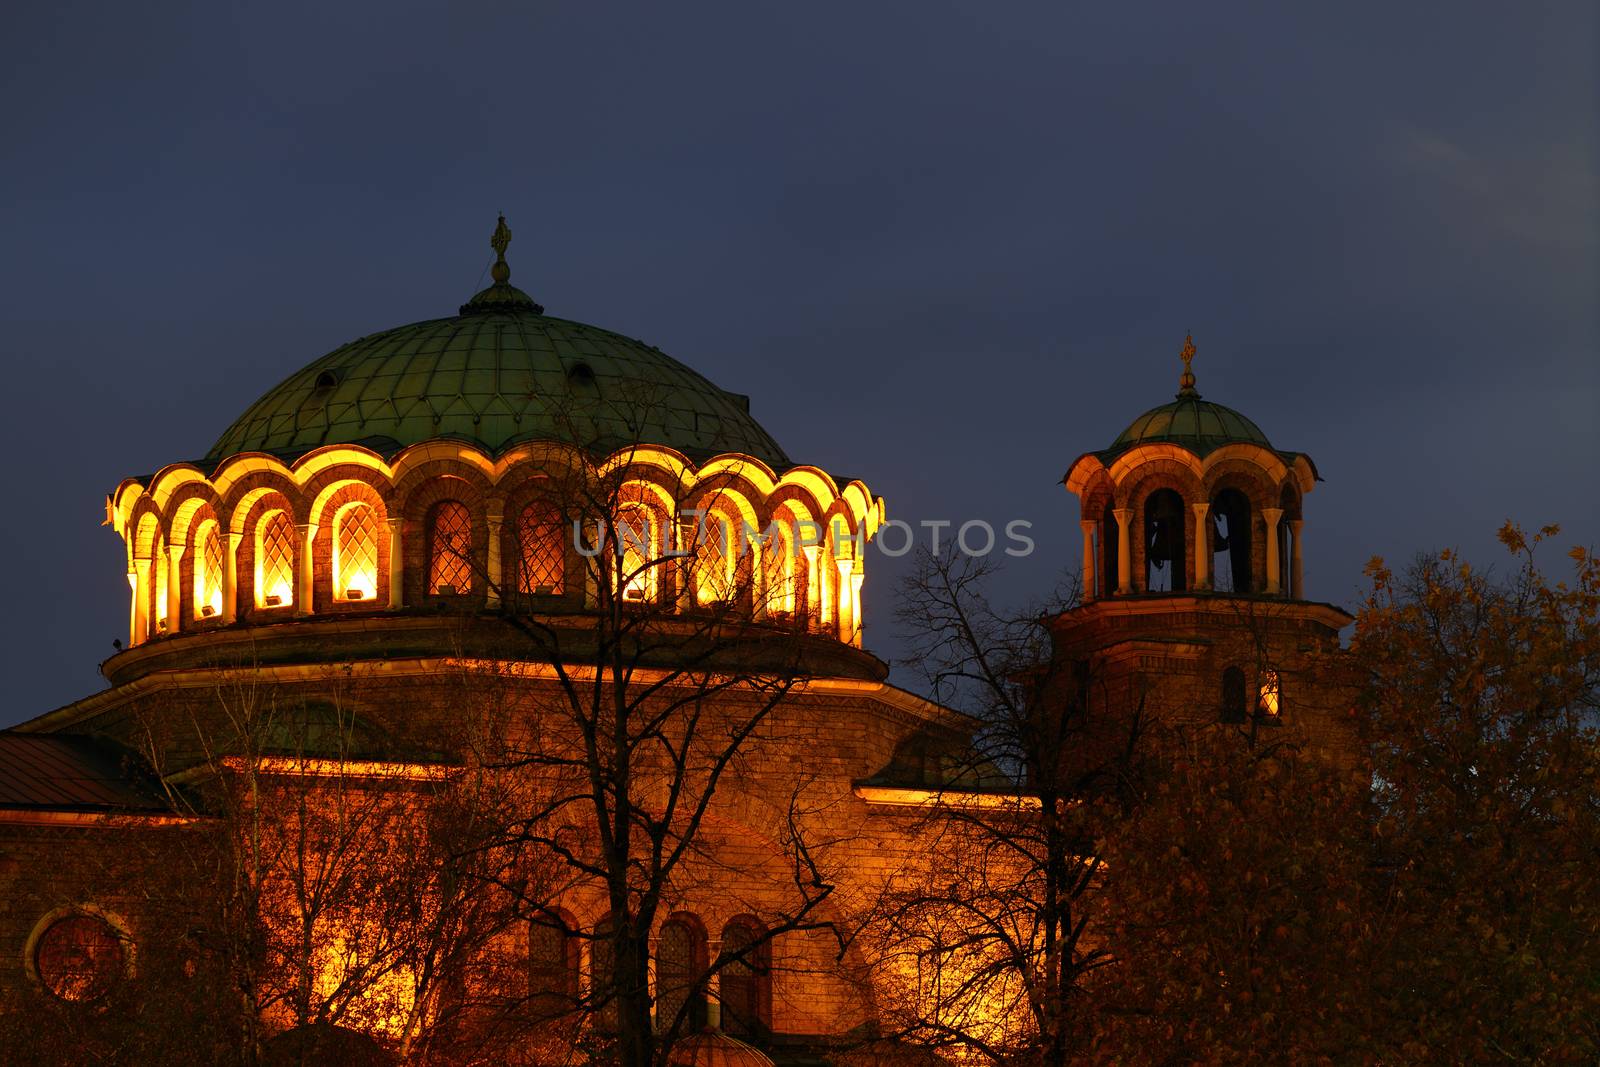 "St Nedelya" Church at night by alexkosev